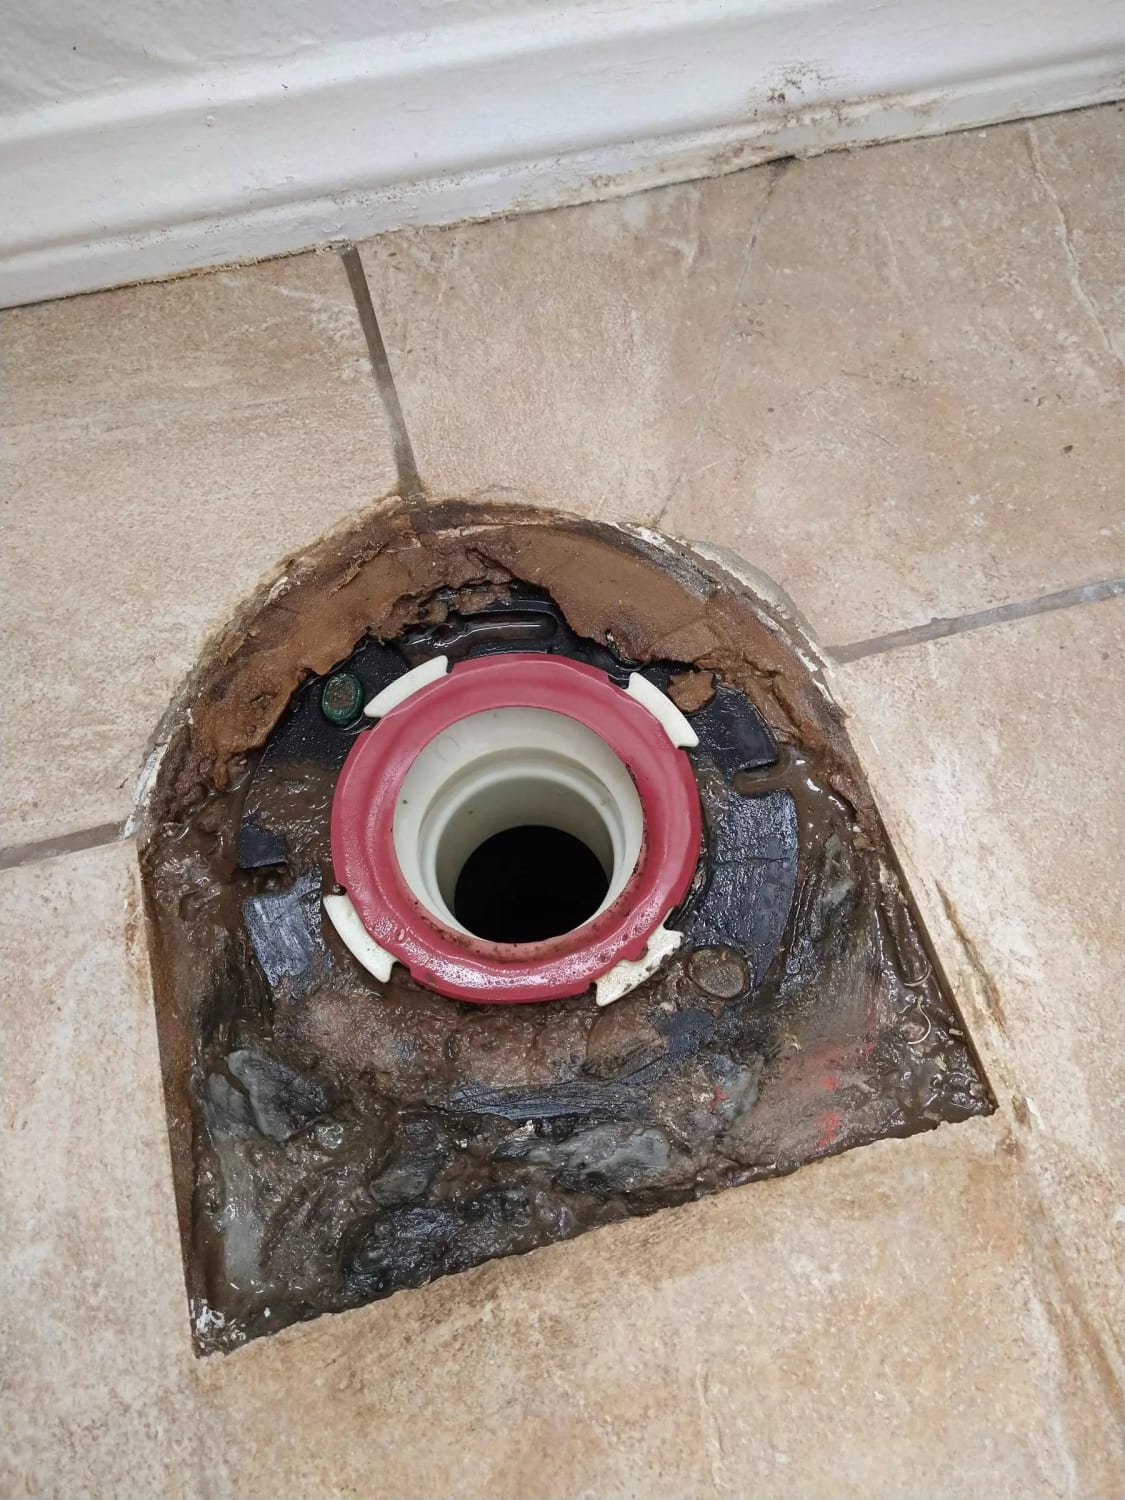 Toilet leaking at base